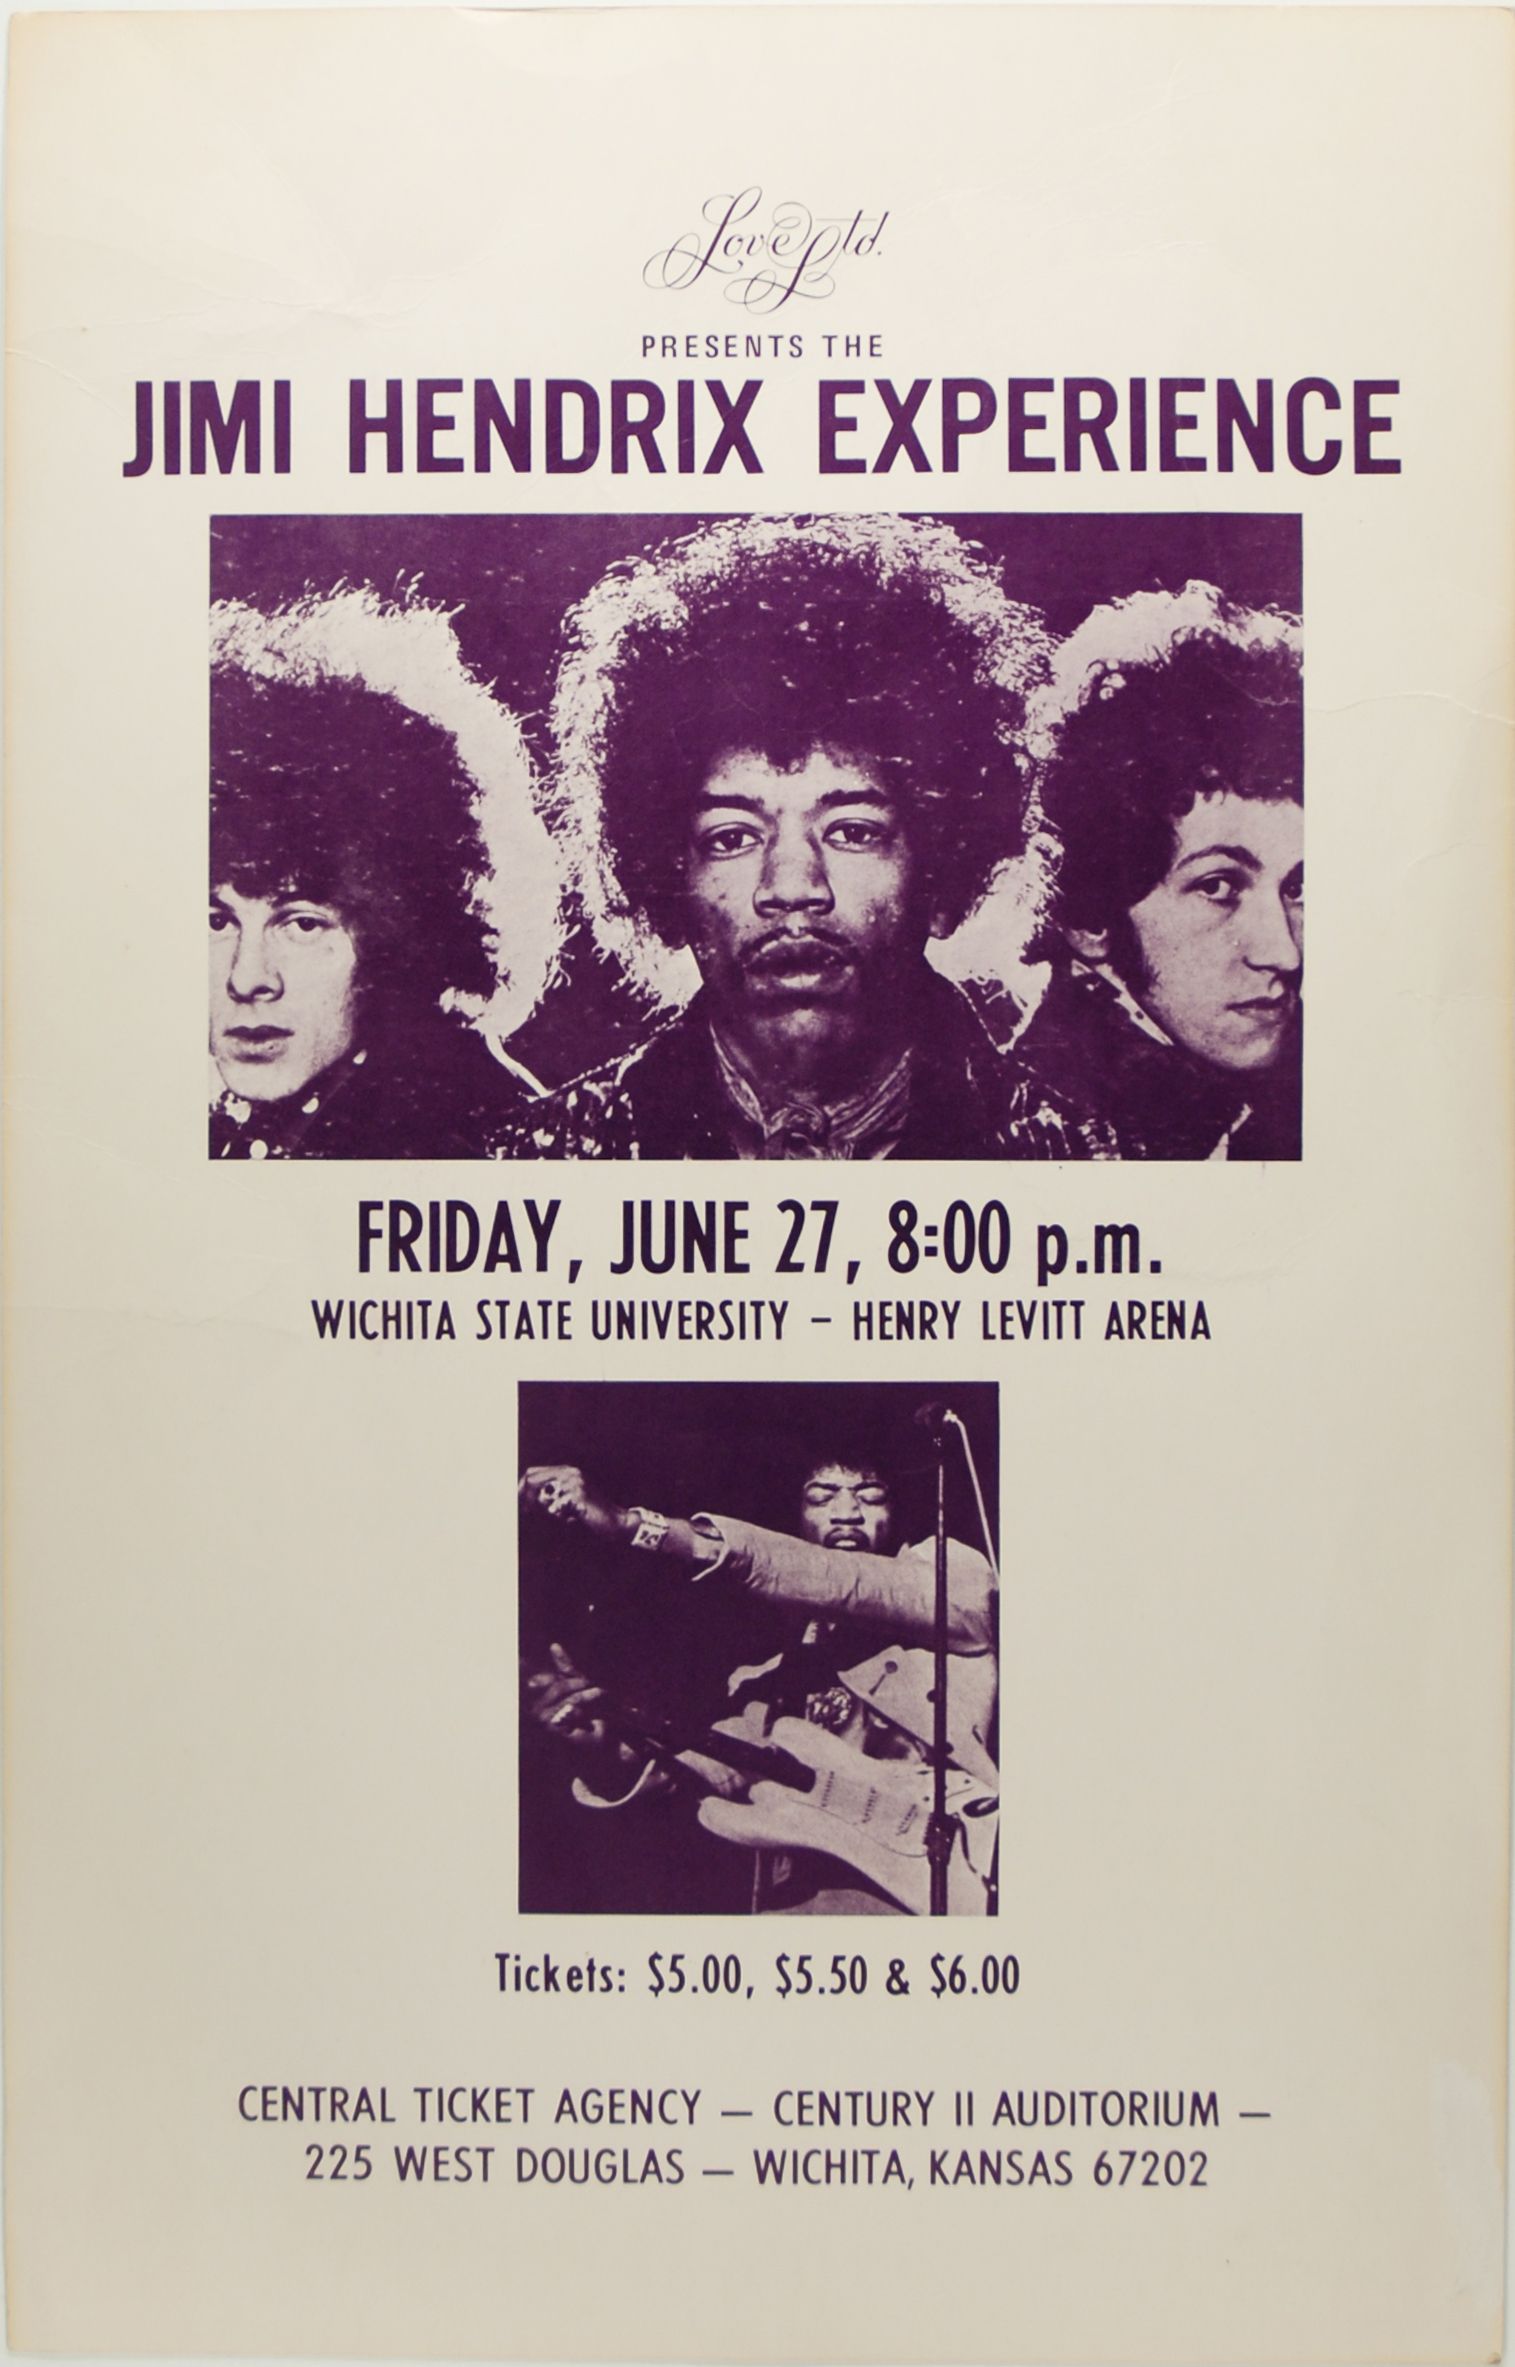 Jimi Hendrix at Henry Levitt Arena 1969 Concert Poster